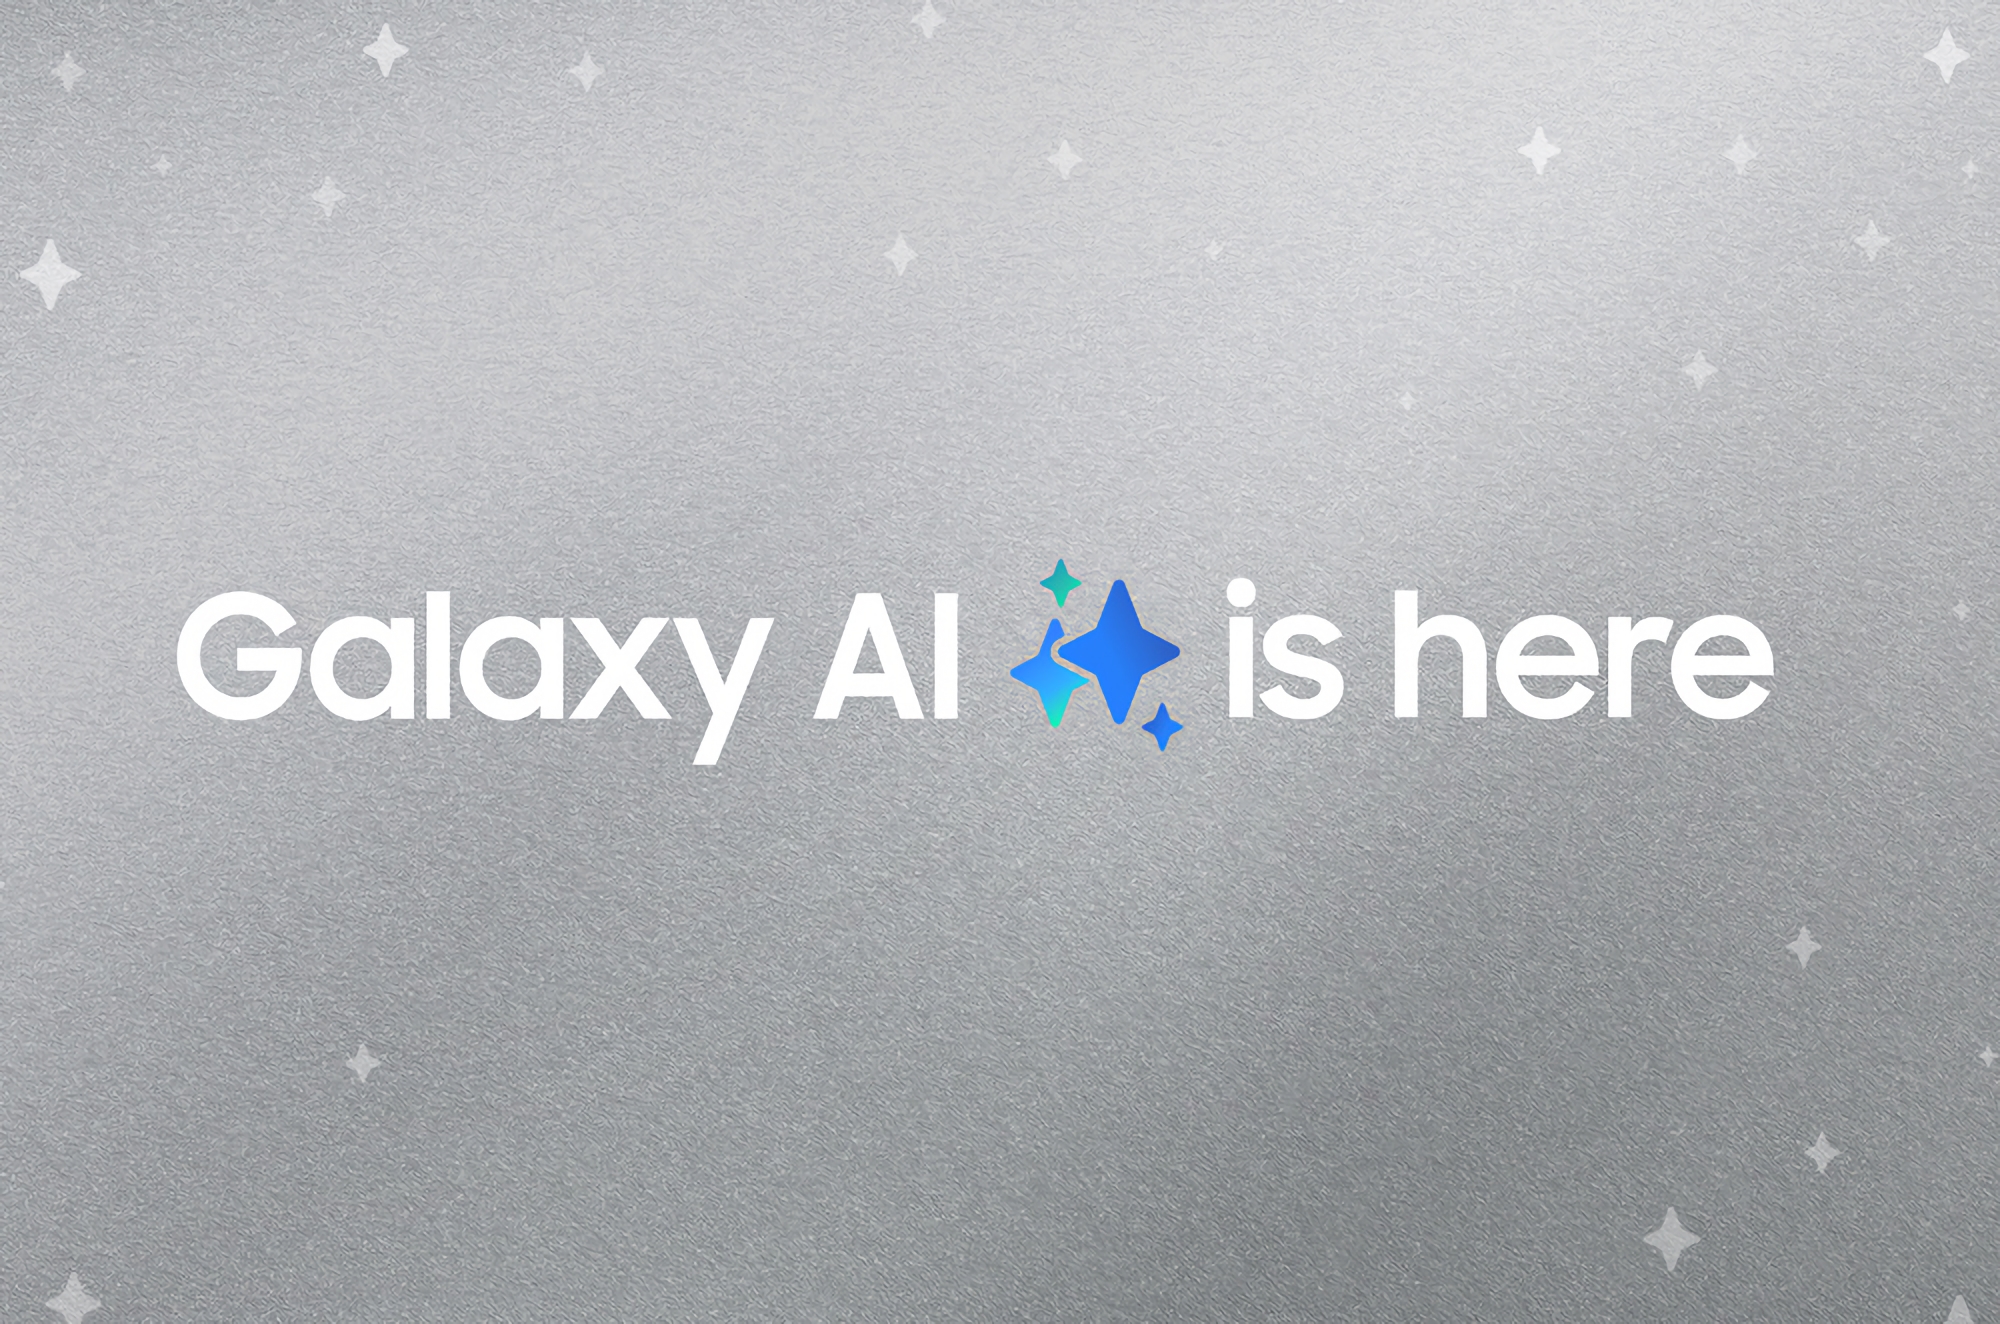 Samsung har avslöjat vilka av deras smartphones och surfplattor som kommer att få One UI 6.1 med Galaxy AI i mars